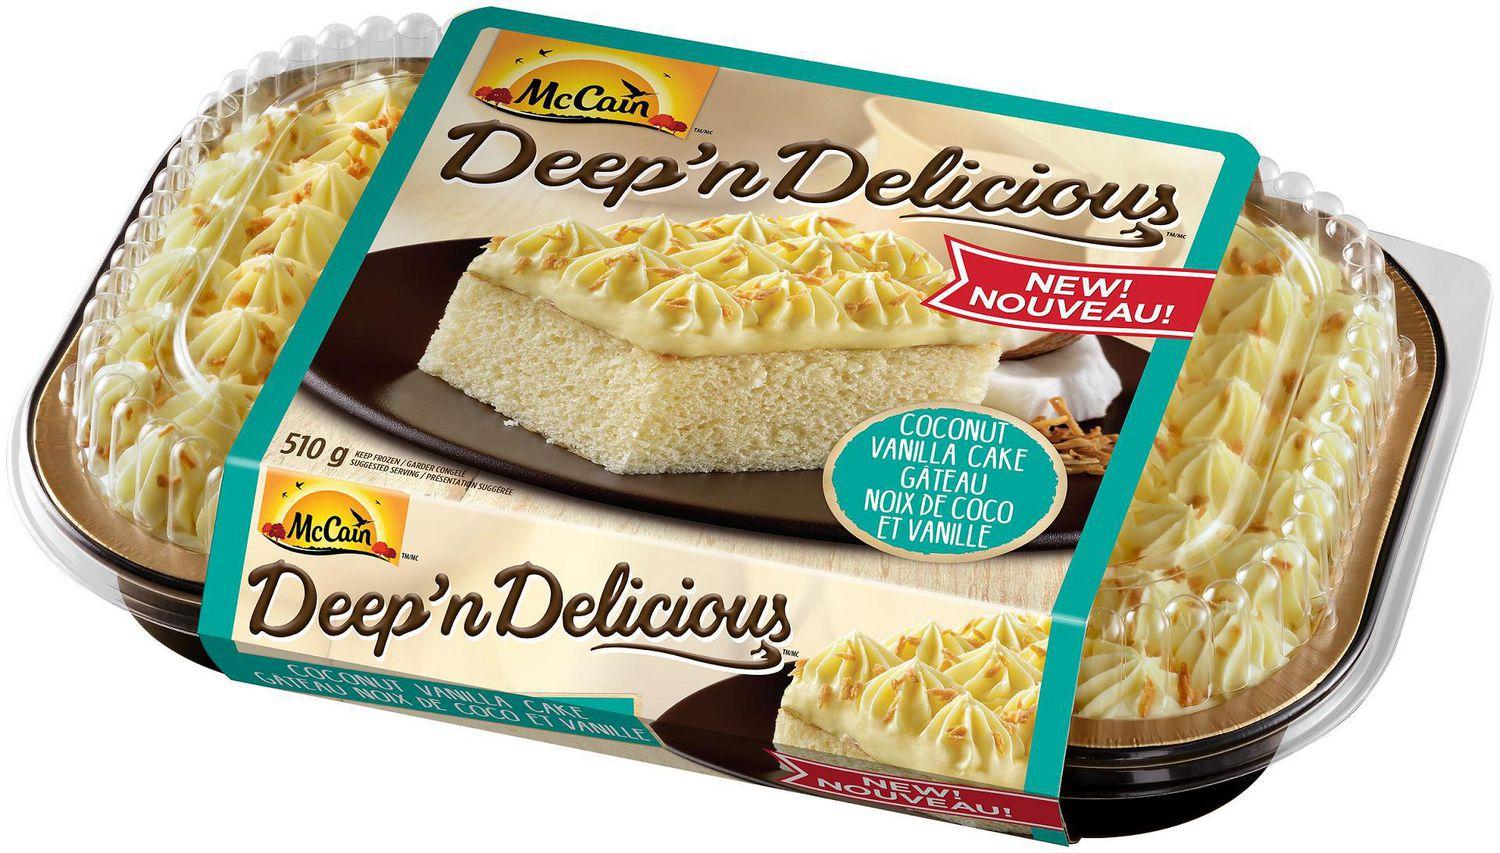 mccain-deep-n-delicious-coconut-vanilla-cake